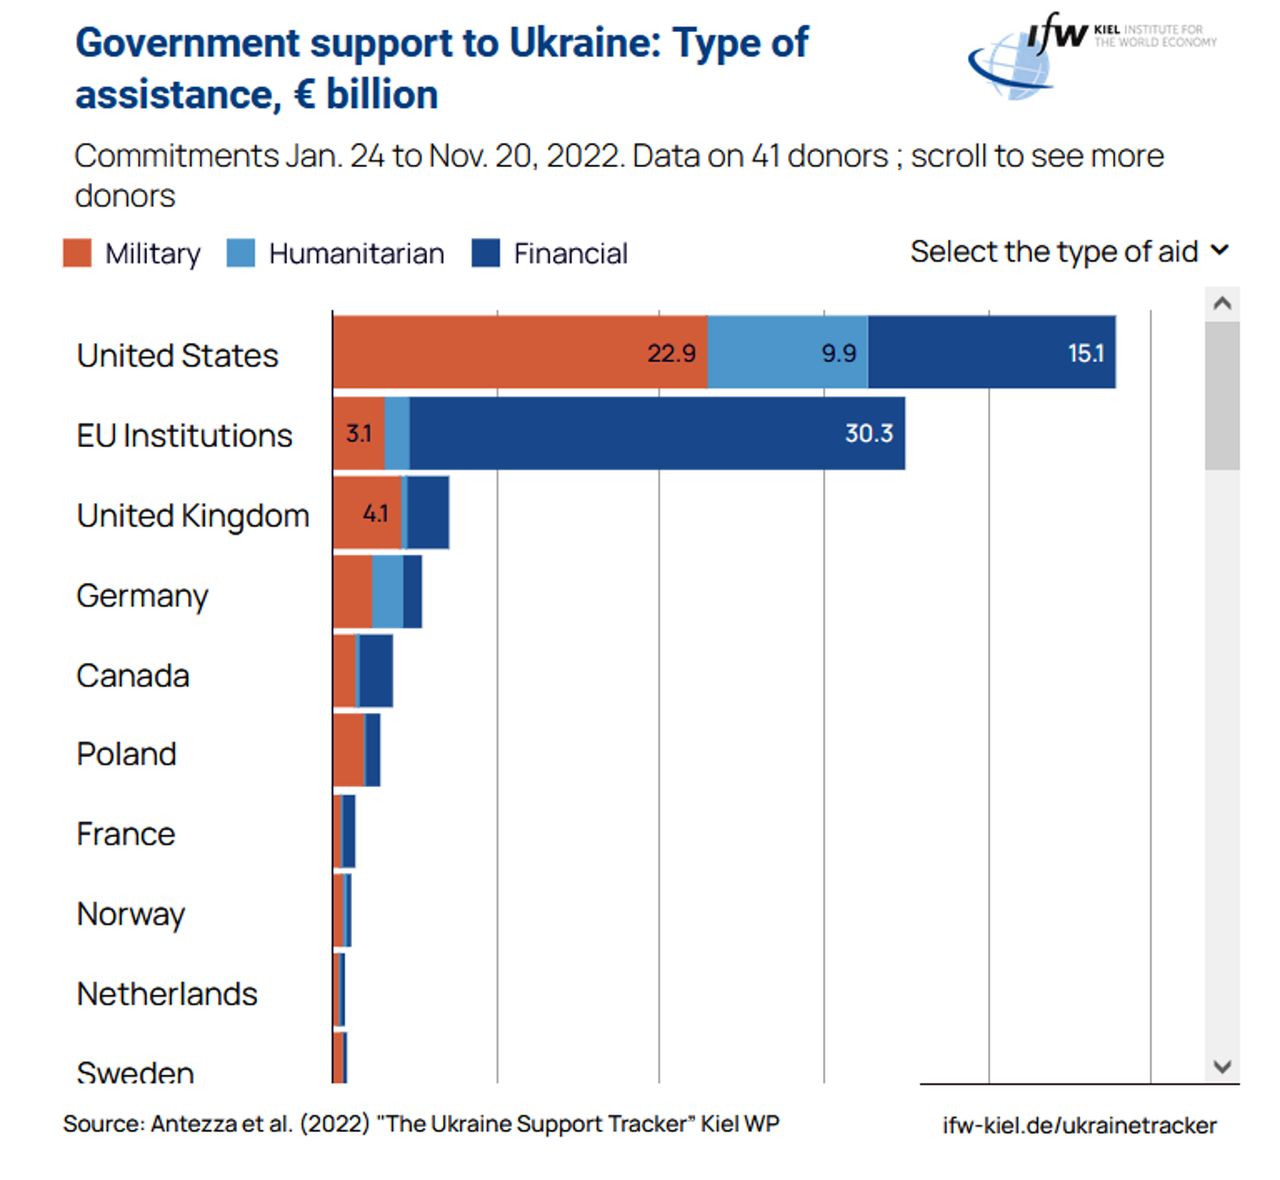 Wartość pomocy wojskowej dla Ukrainy oznaczona kolorem pomarańczowym (kolejność państw według sumarycznej wartości pomocy, również finansowej i humanitarnej)